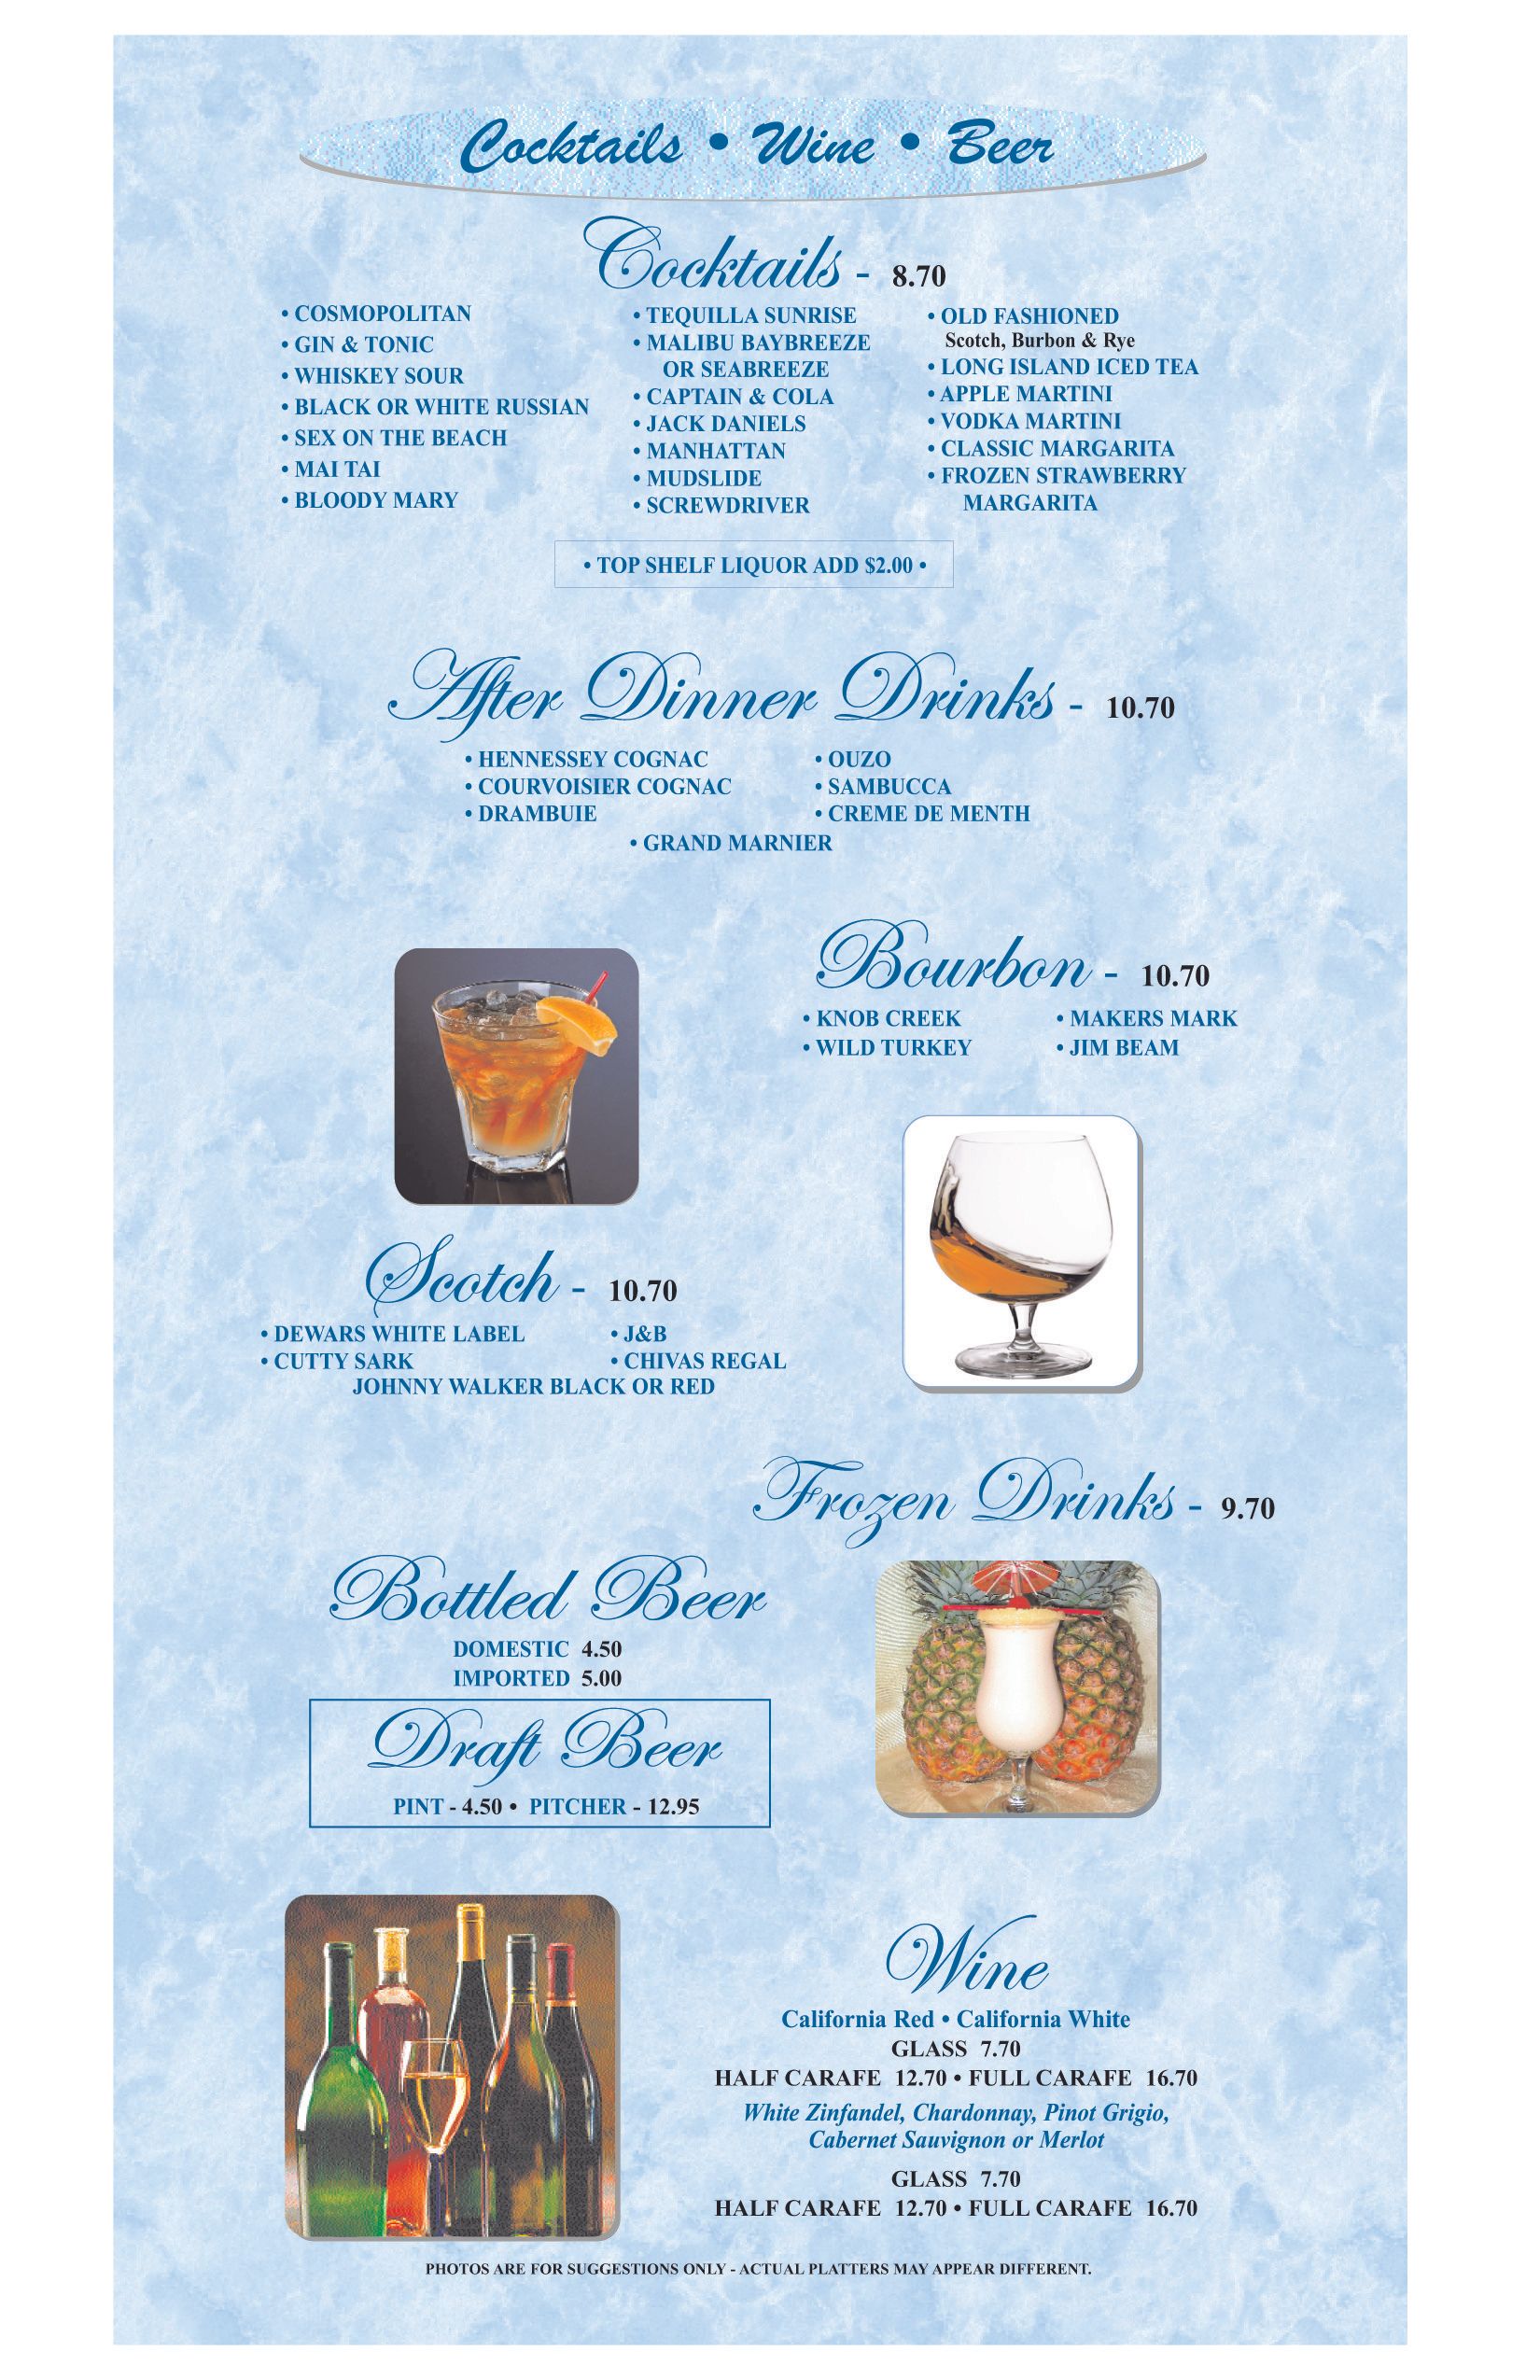 Cocktails, wine, beer menu